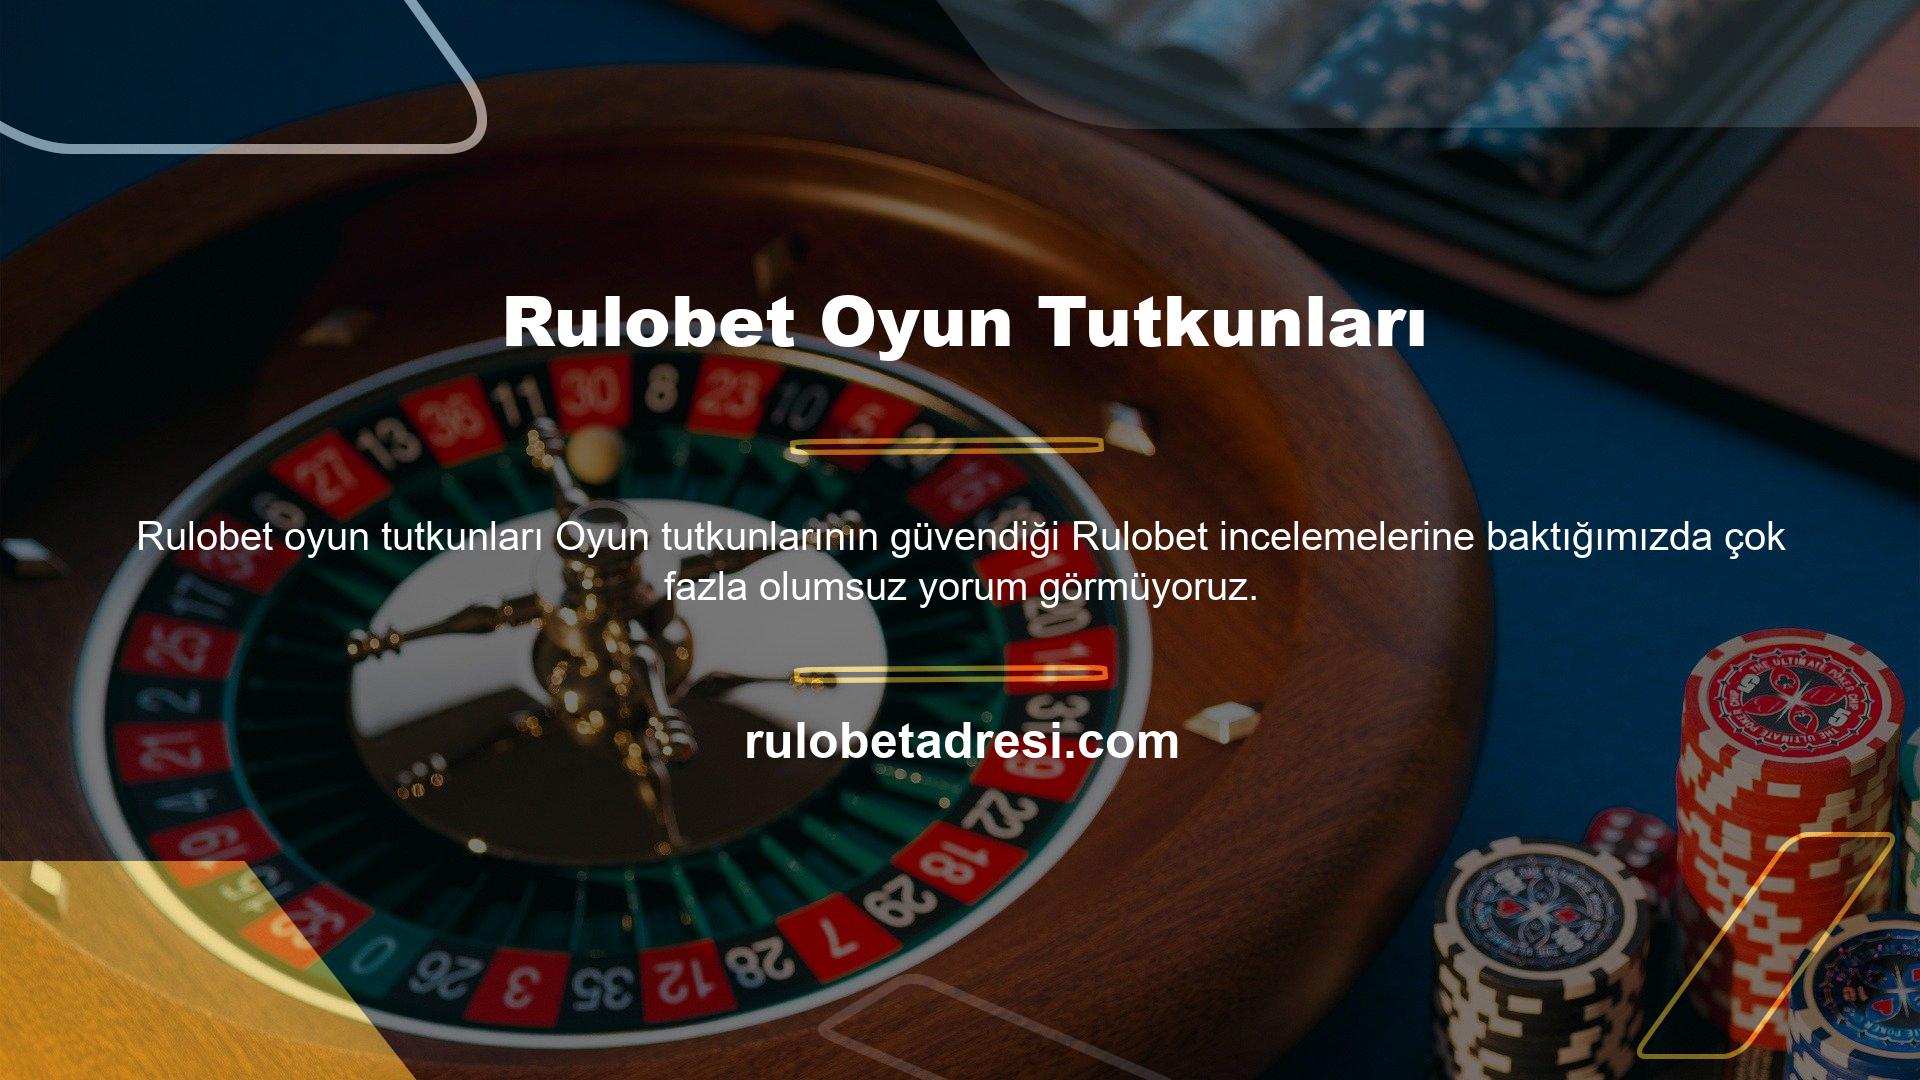 Rulobet canlı bahis ve casino bahis sitesi, müşterilerine çeşitli ödeme yöntemleri sunmakta ve ödeme işlemlerinde olası sorunları önlemek için web sitesinde güvenlik önlemleri uygulamıştır